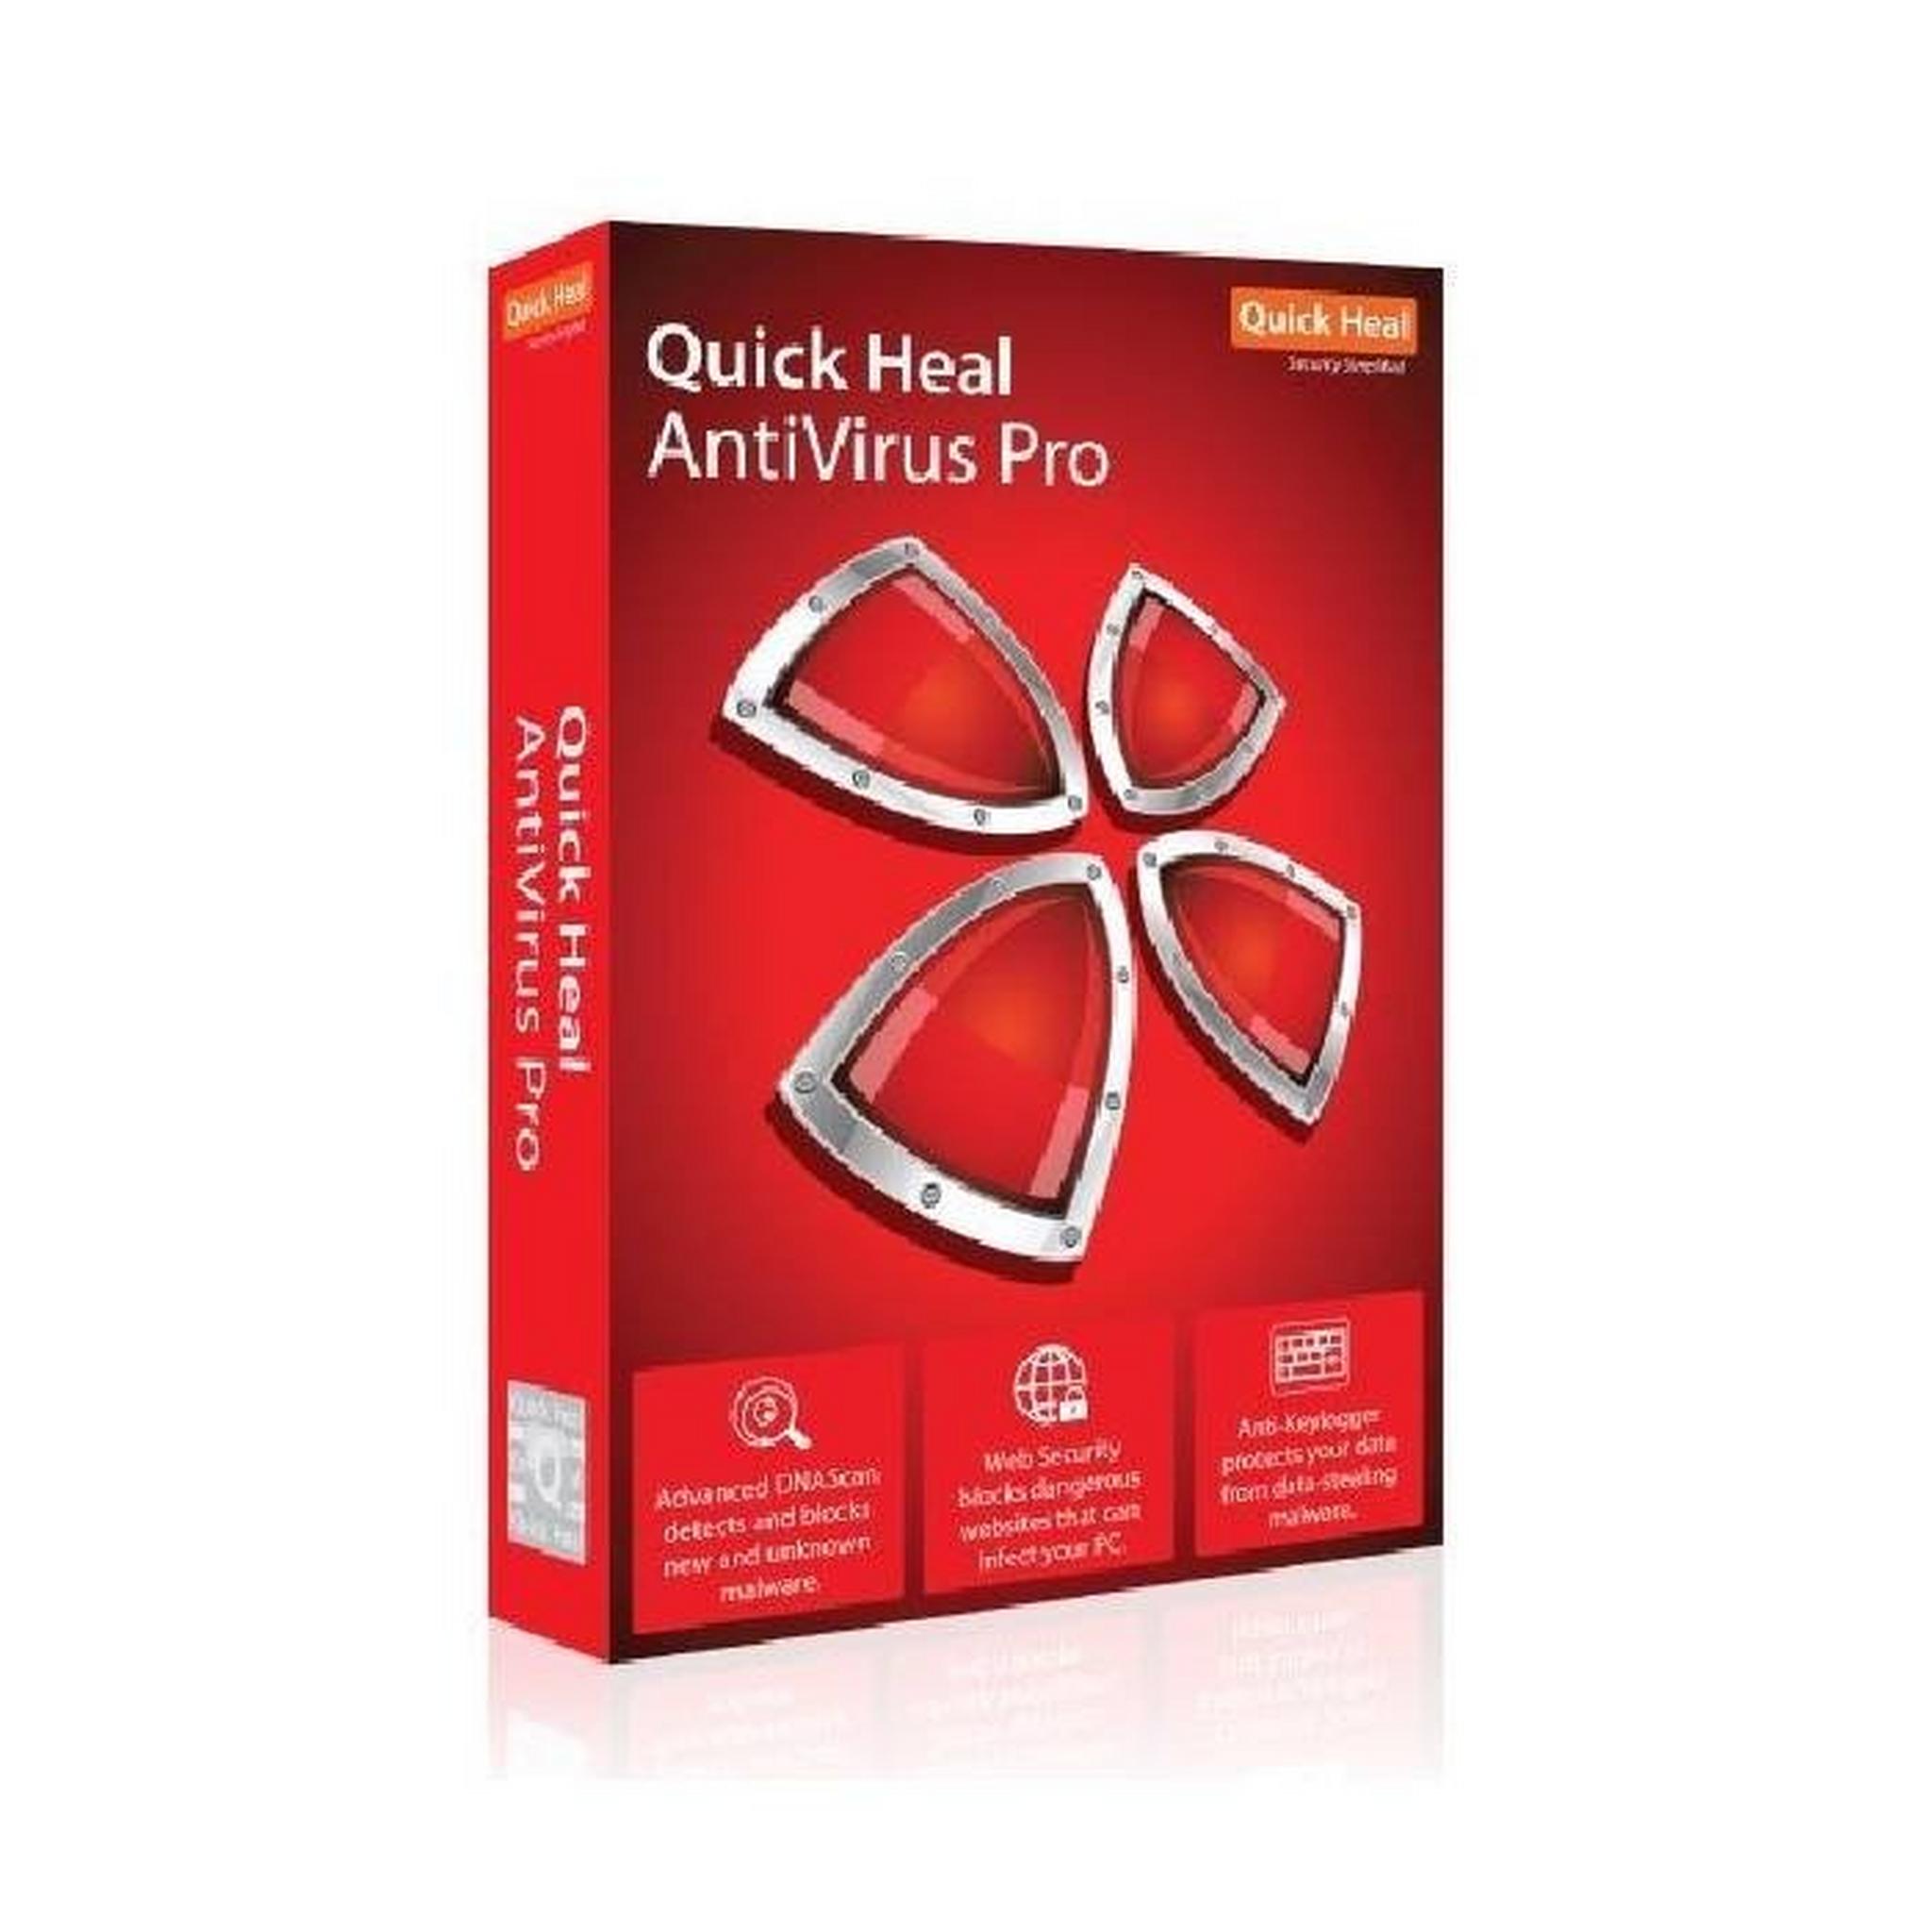 Quick heal Anti-Virus Pro 2018 (QAVOEM1501)